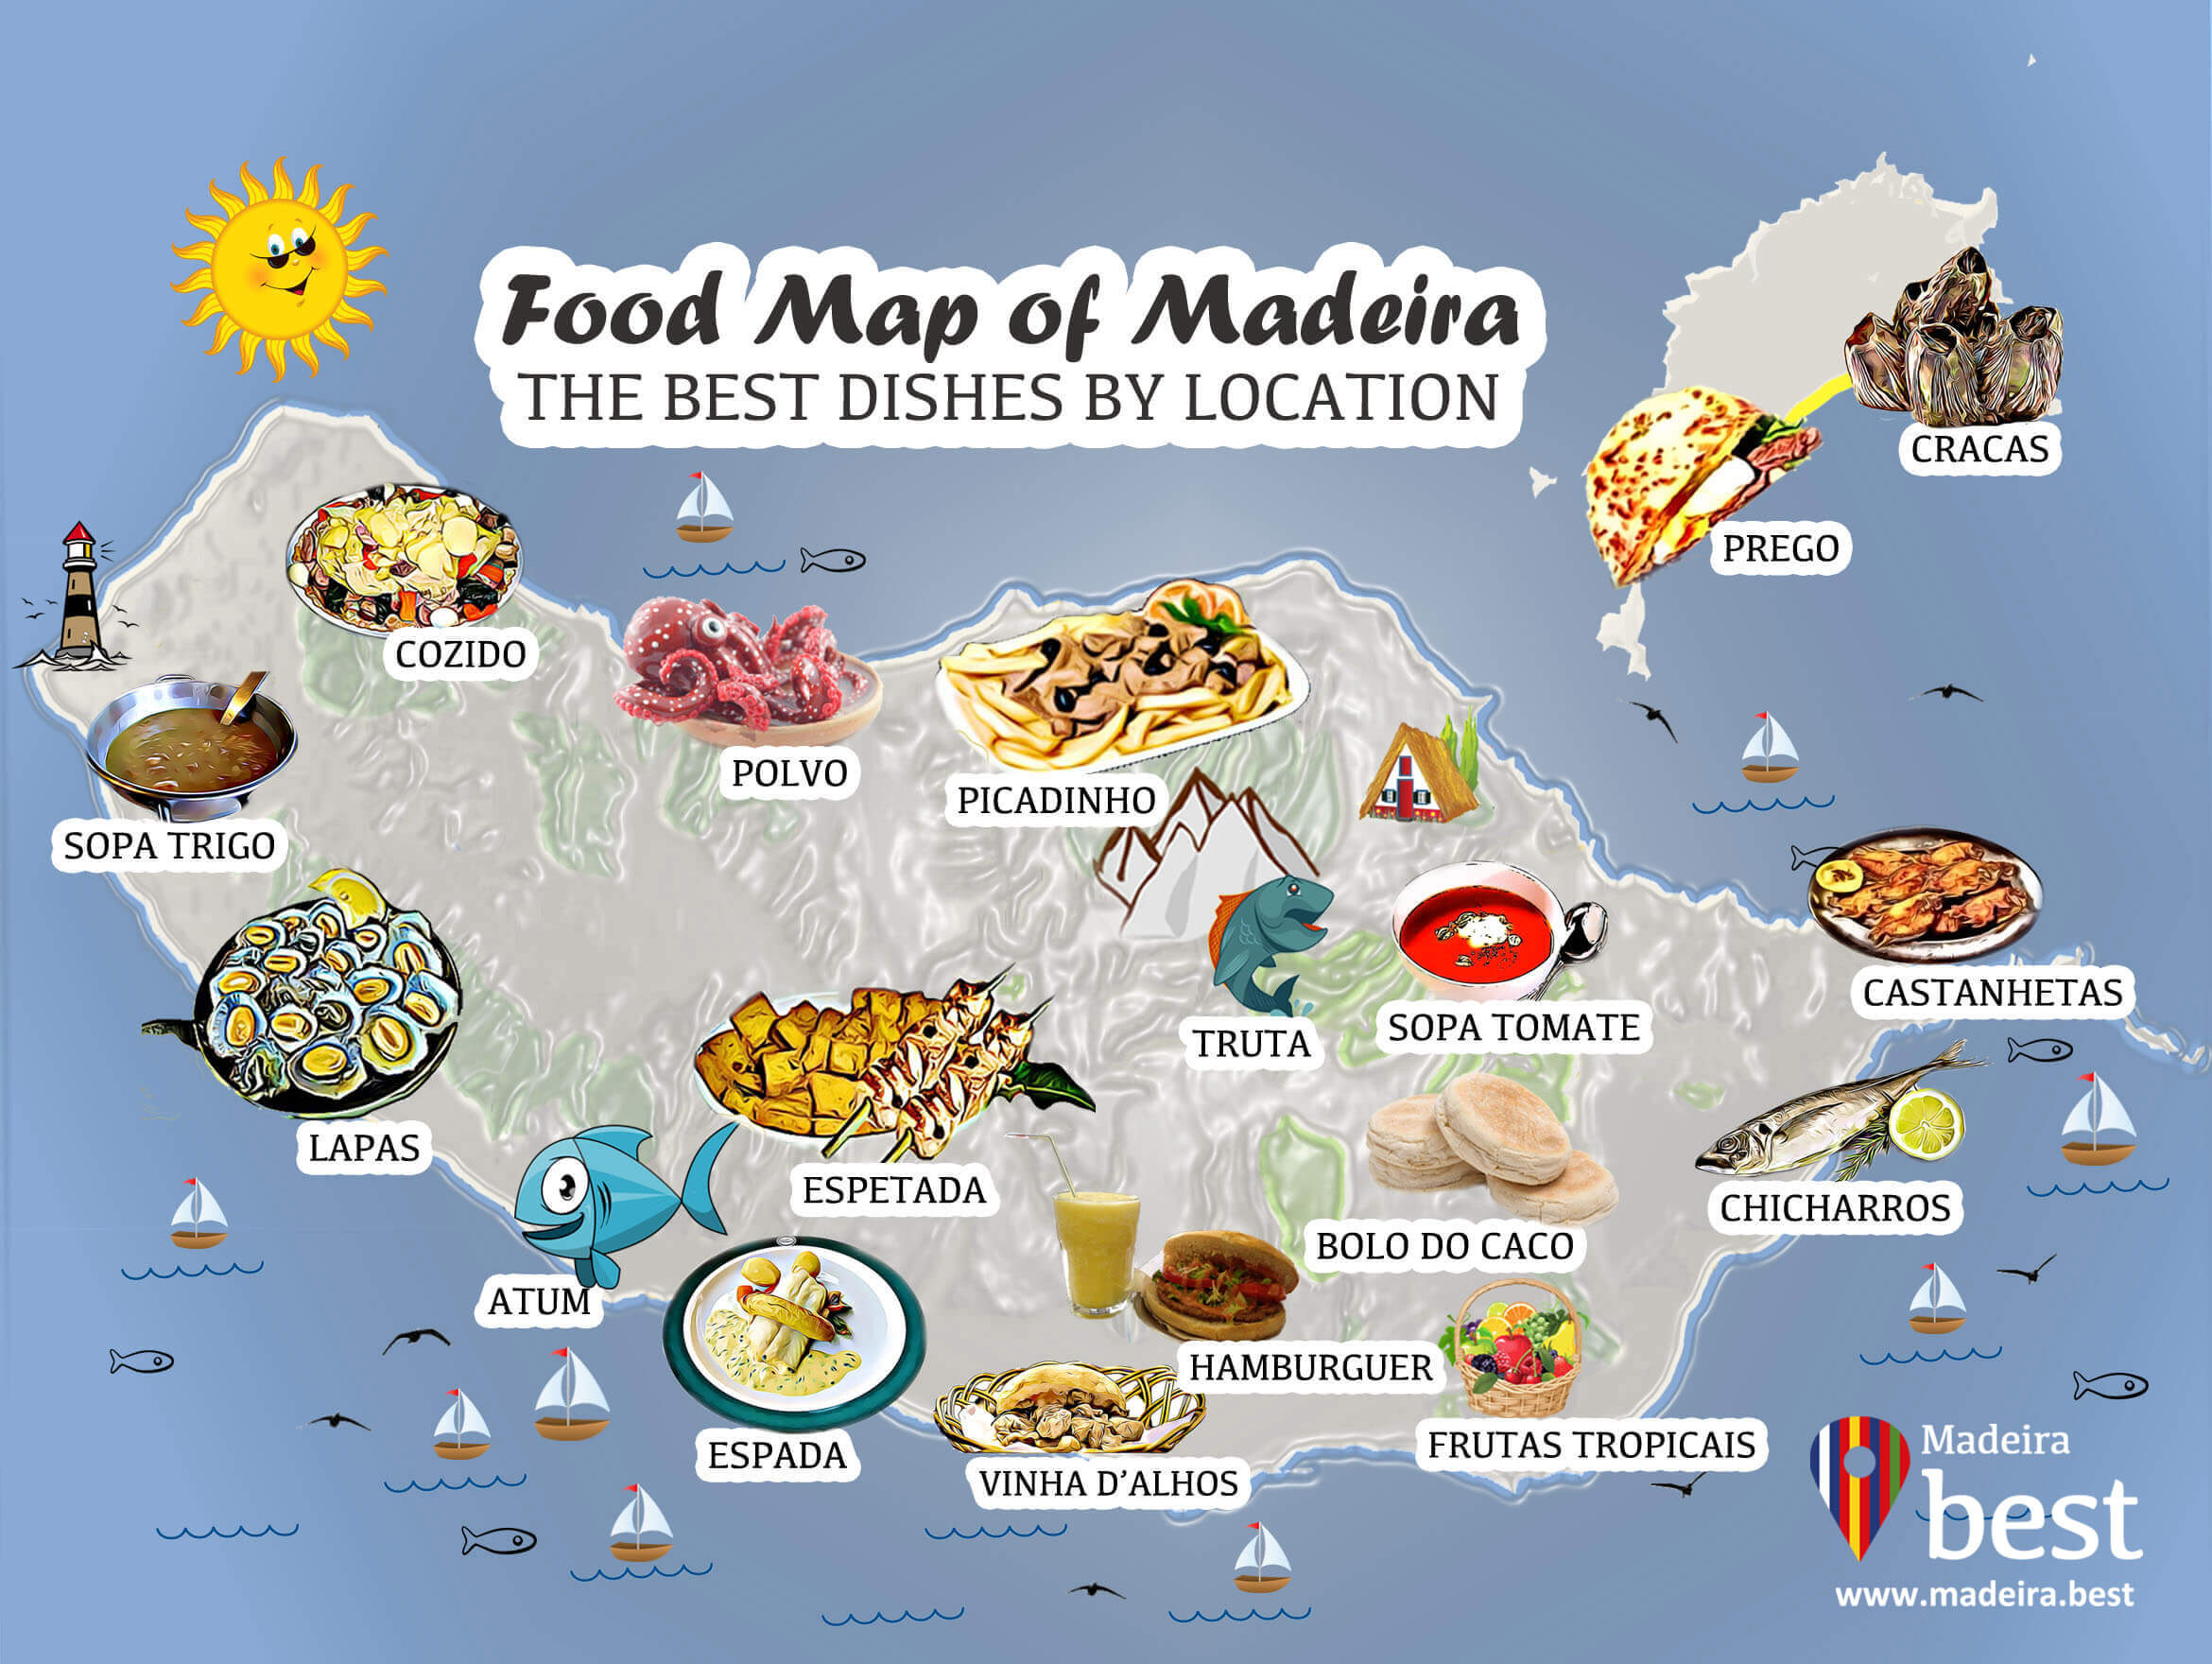 18 Pratos Que Deve Saborear Durante as Suas Férias na Ilha da Madeira